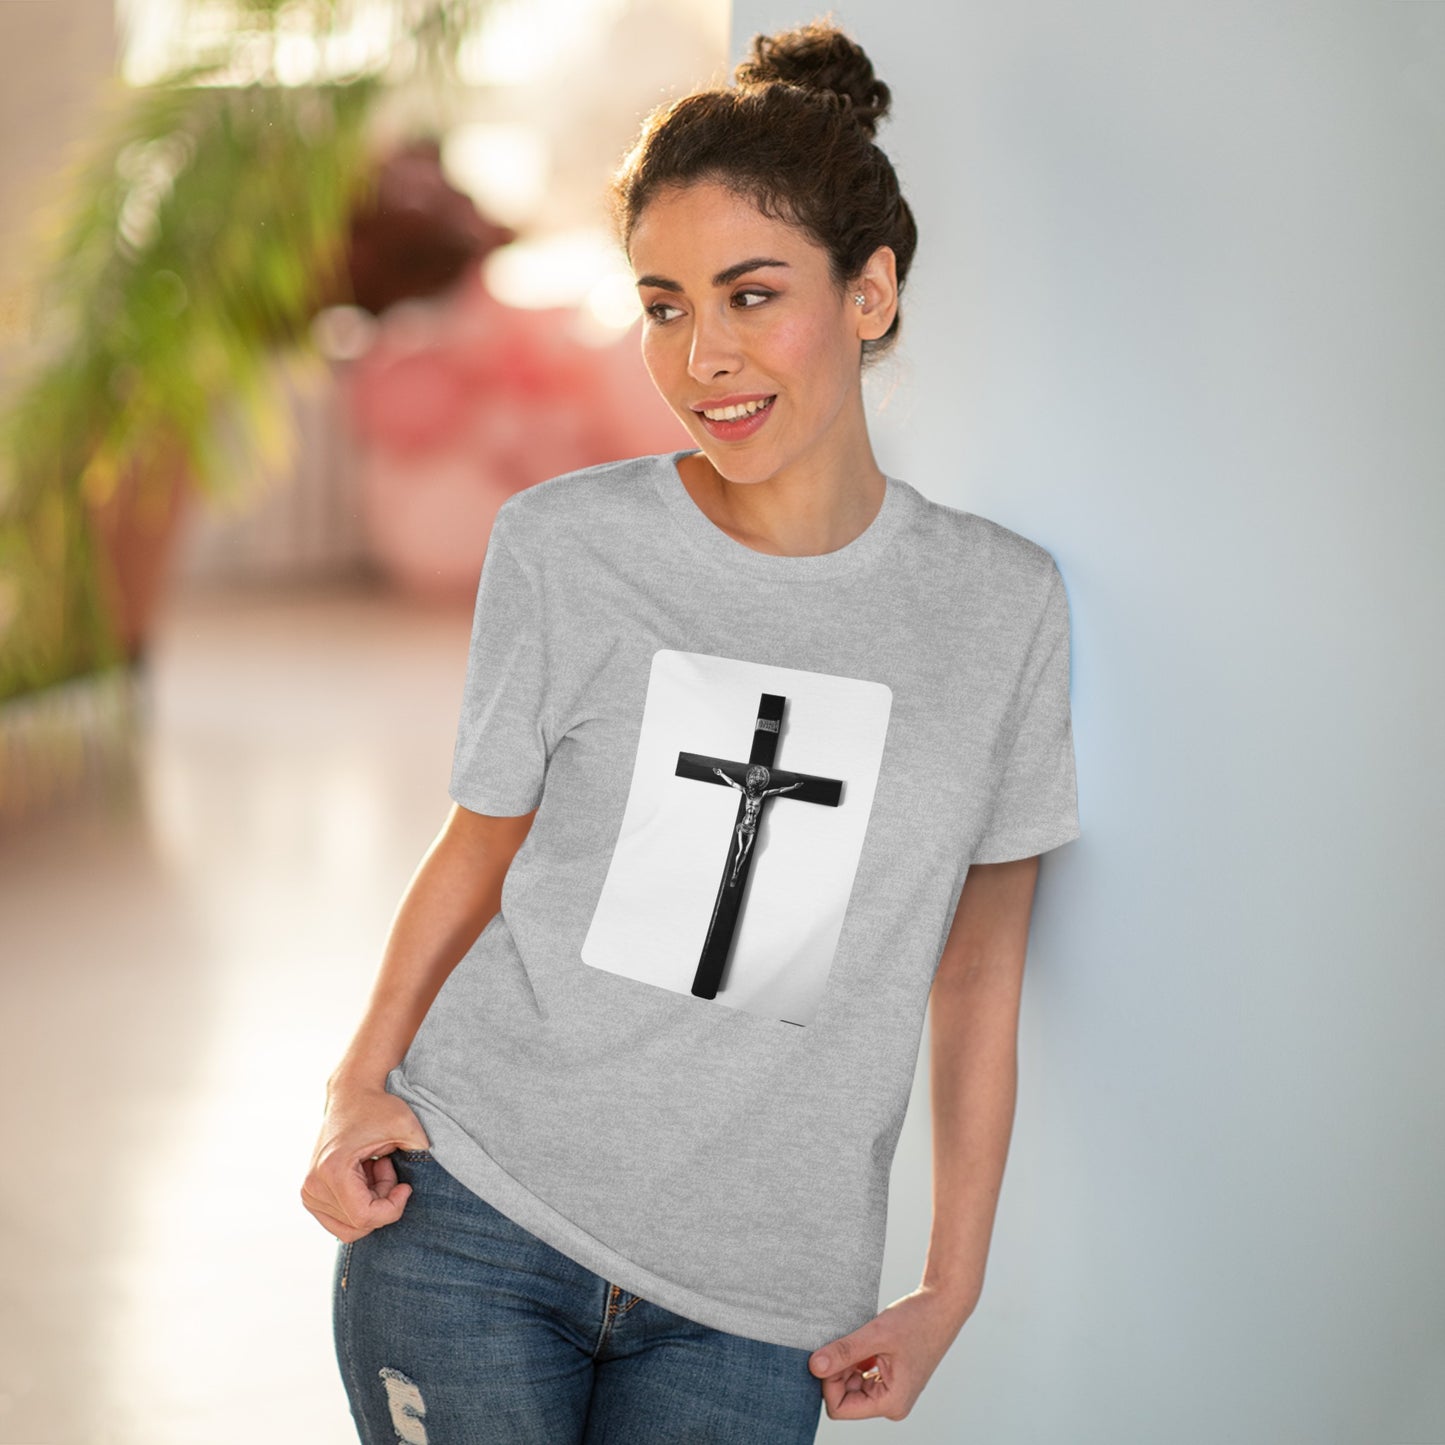 Saviour’s Mantle - T-shirt